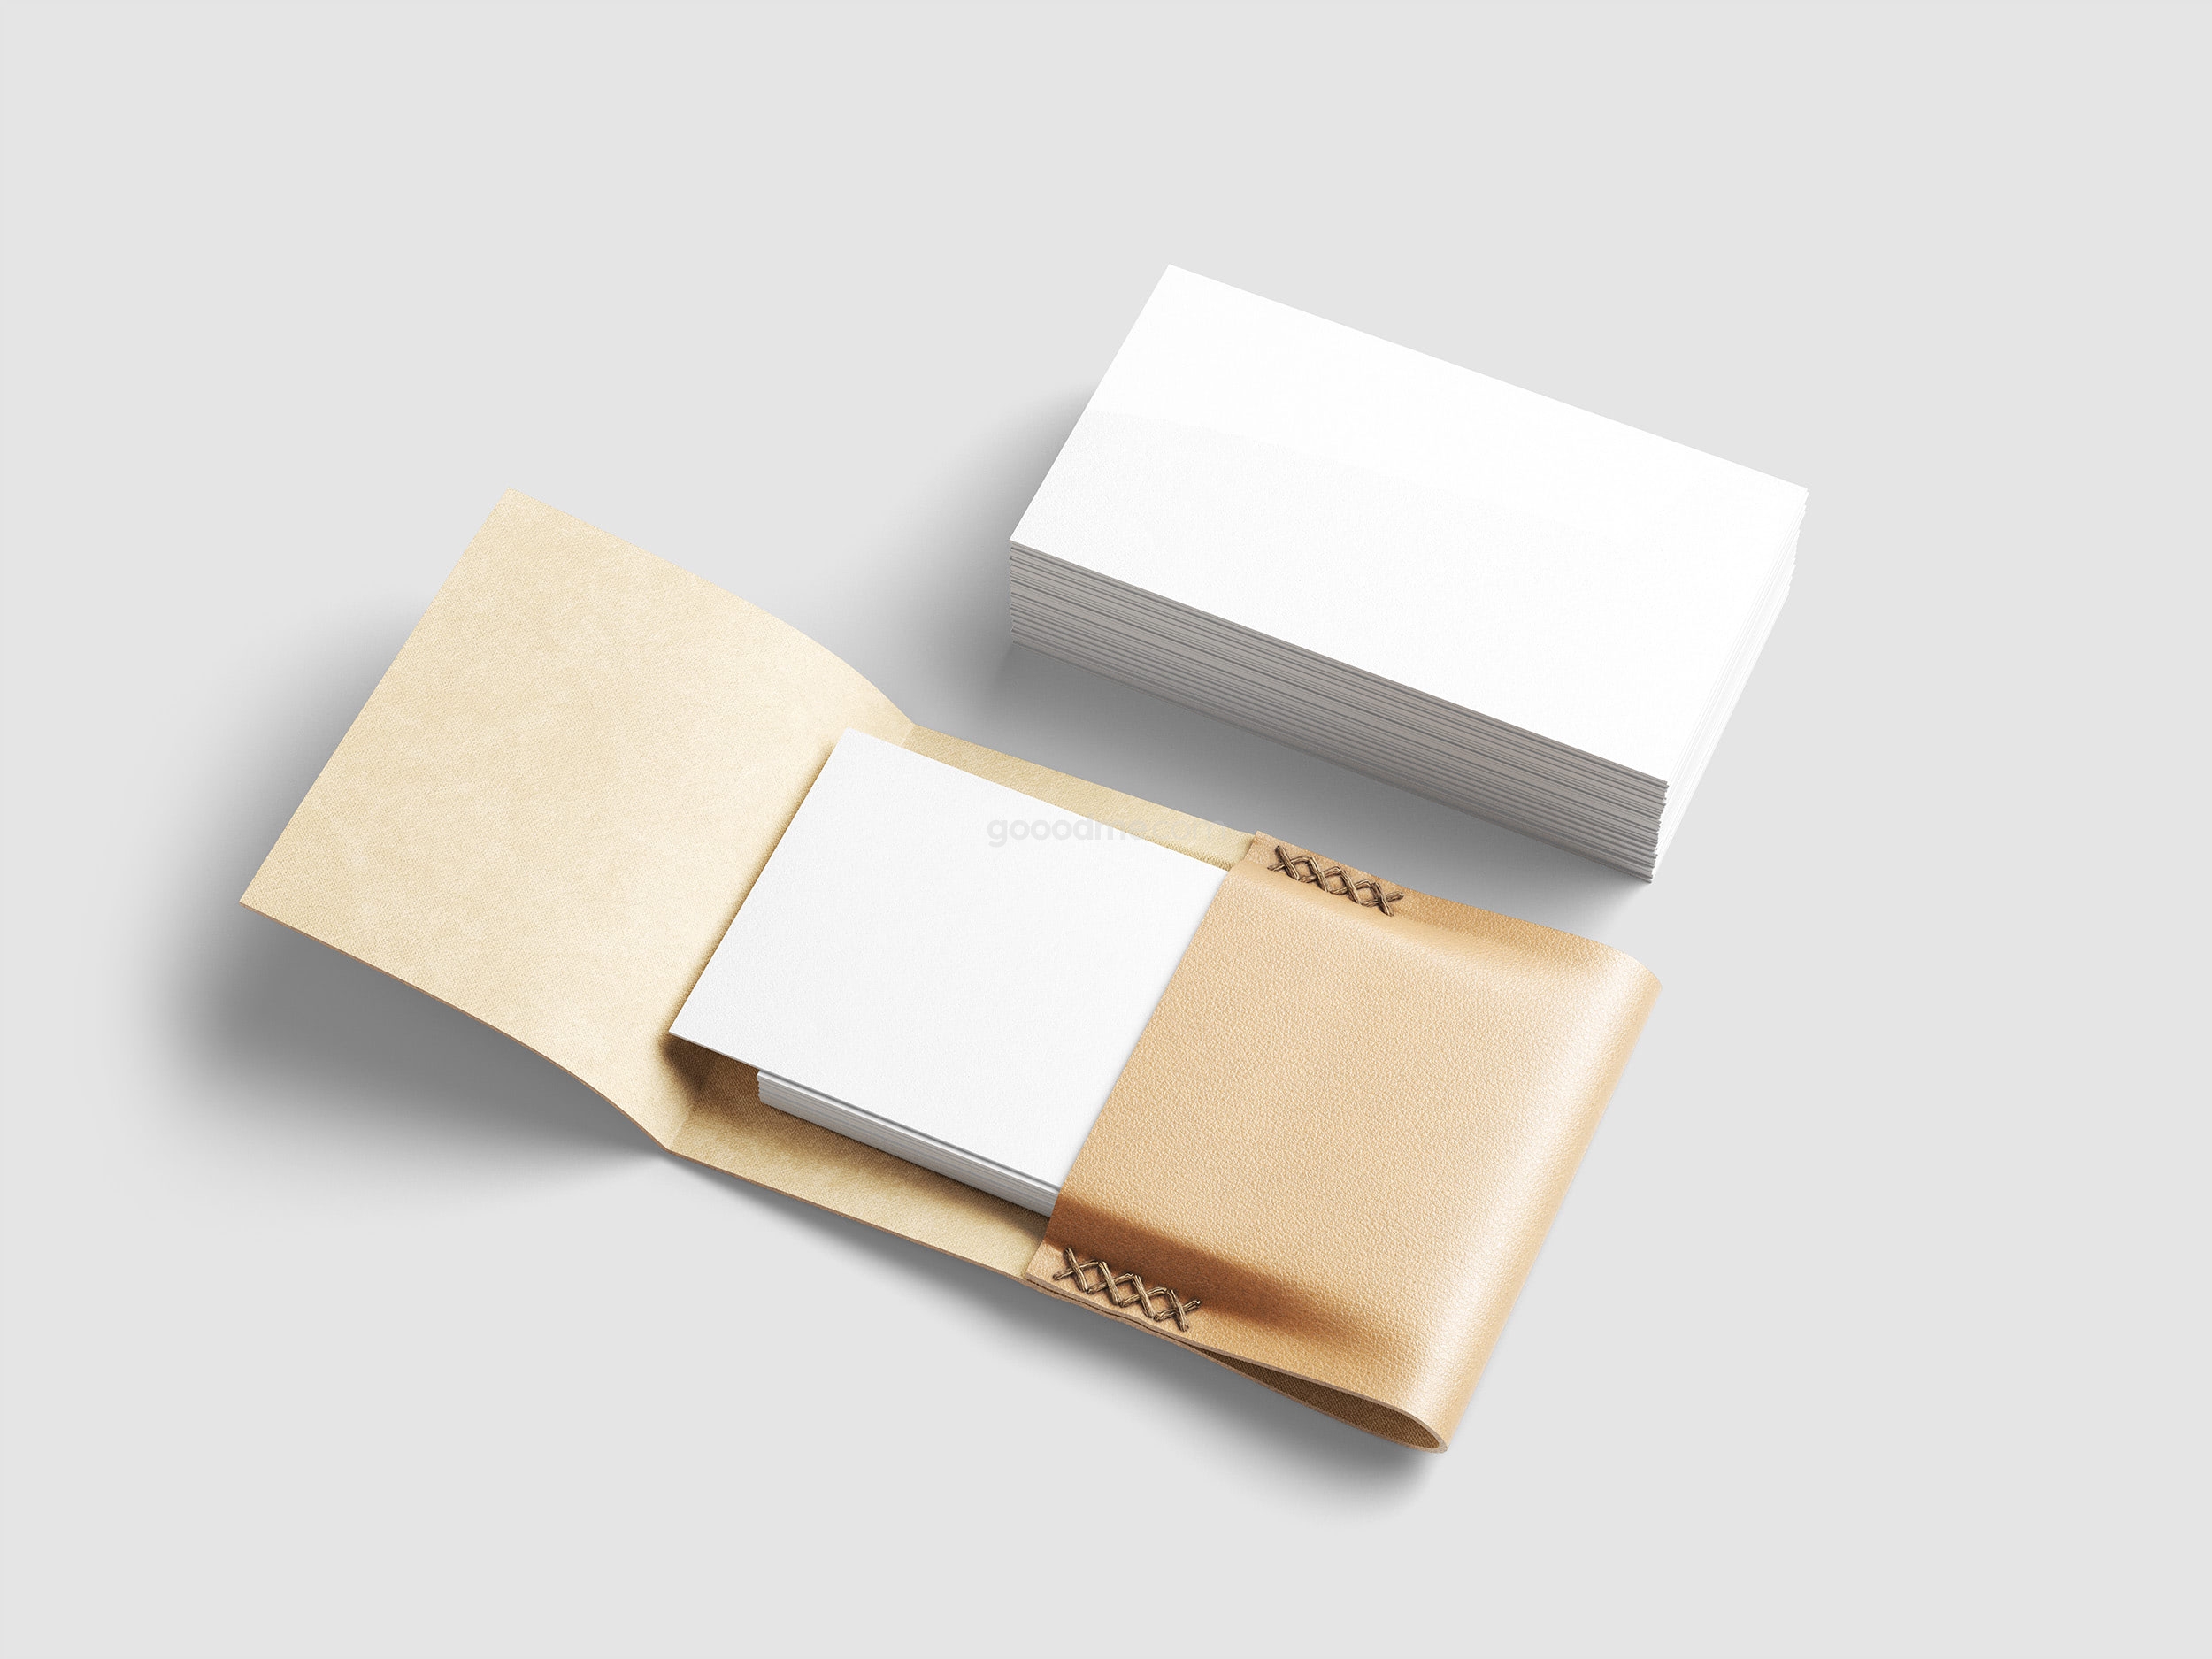 297 可商用品牌VI卡片名片皮套包高质量PSD样机素材Business Cards & Leather Card Holder PSD Mockup